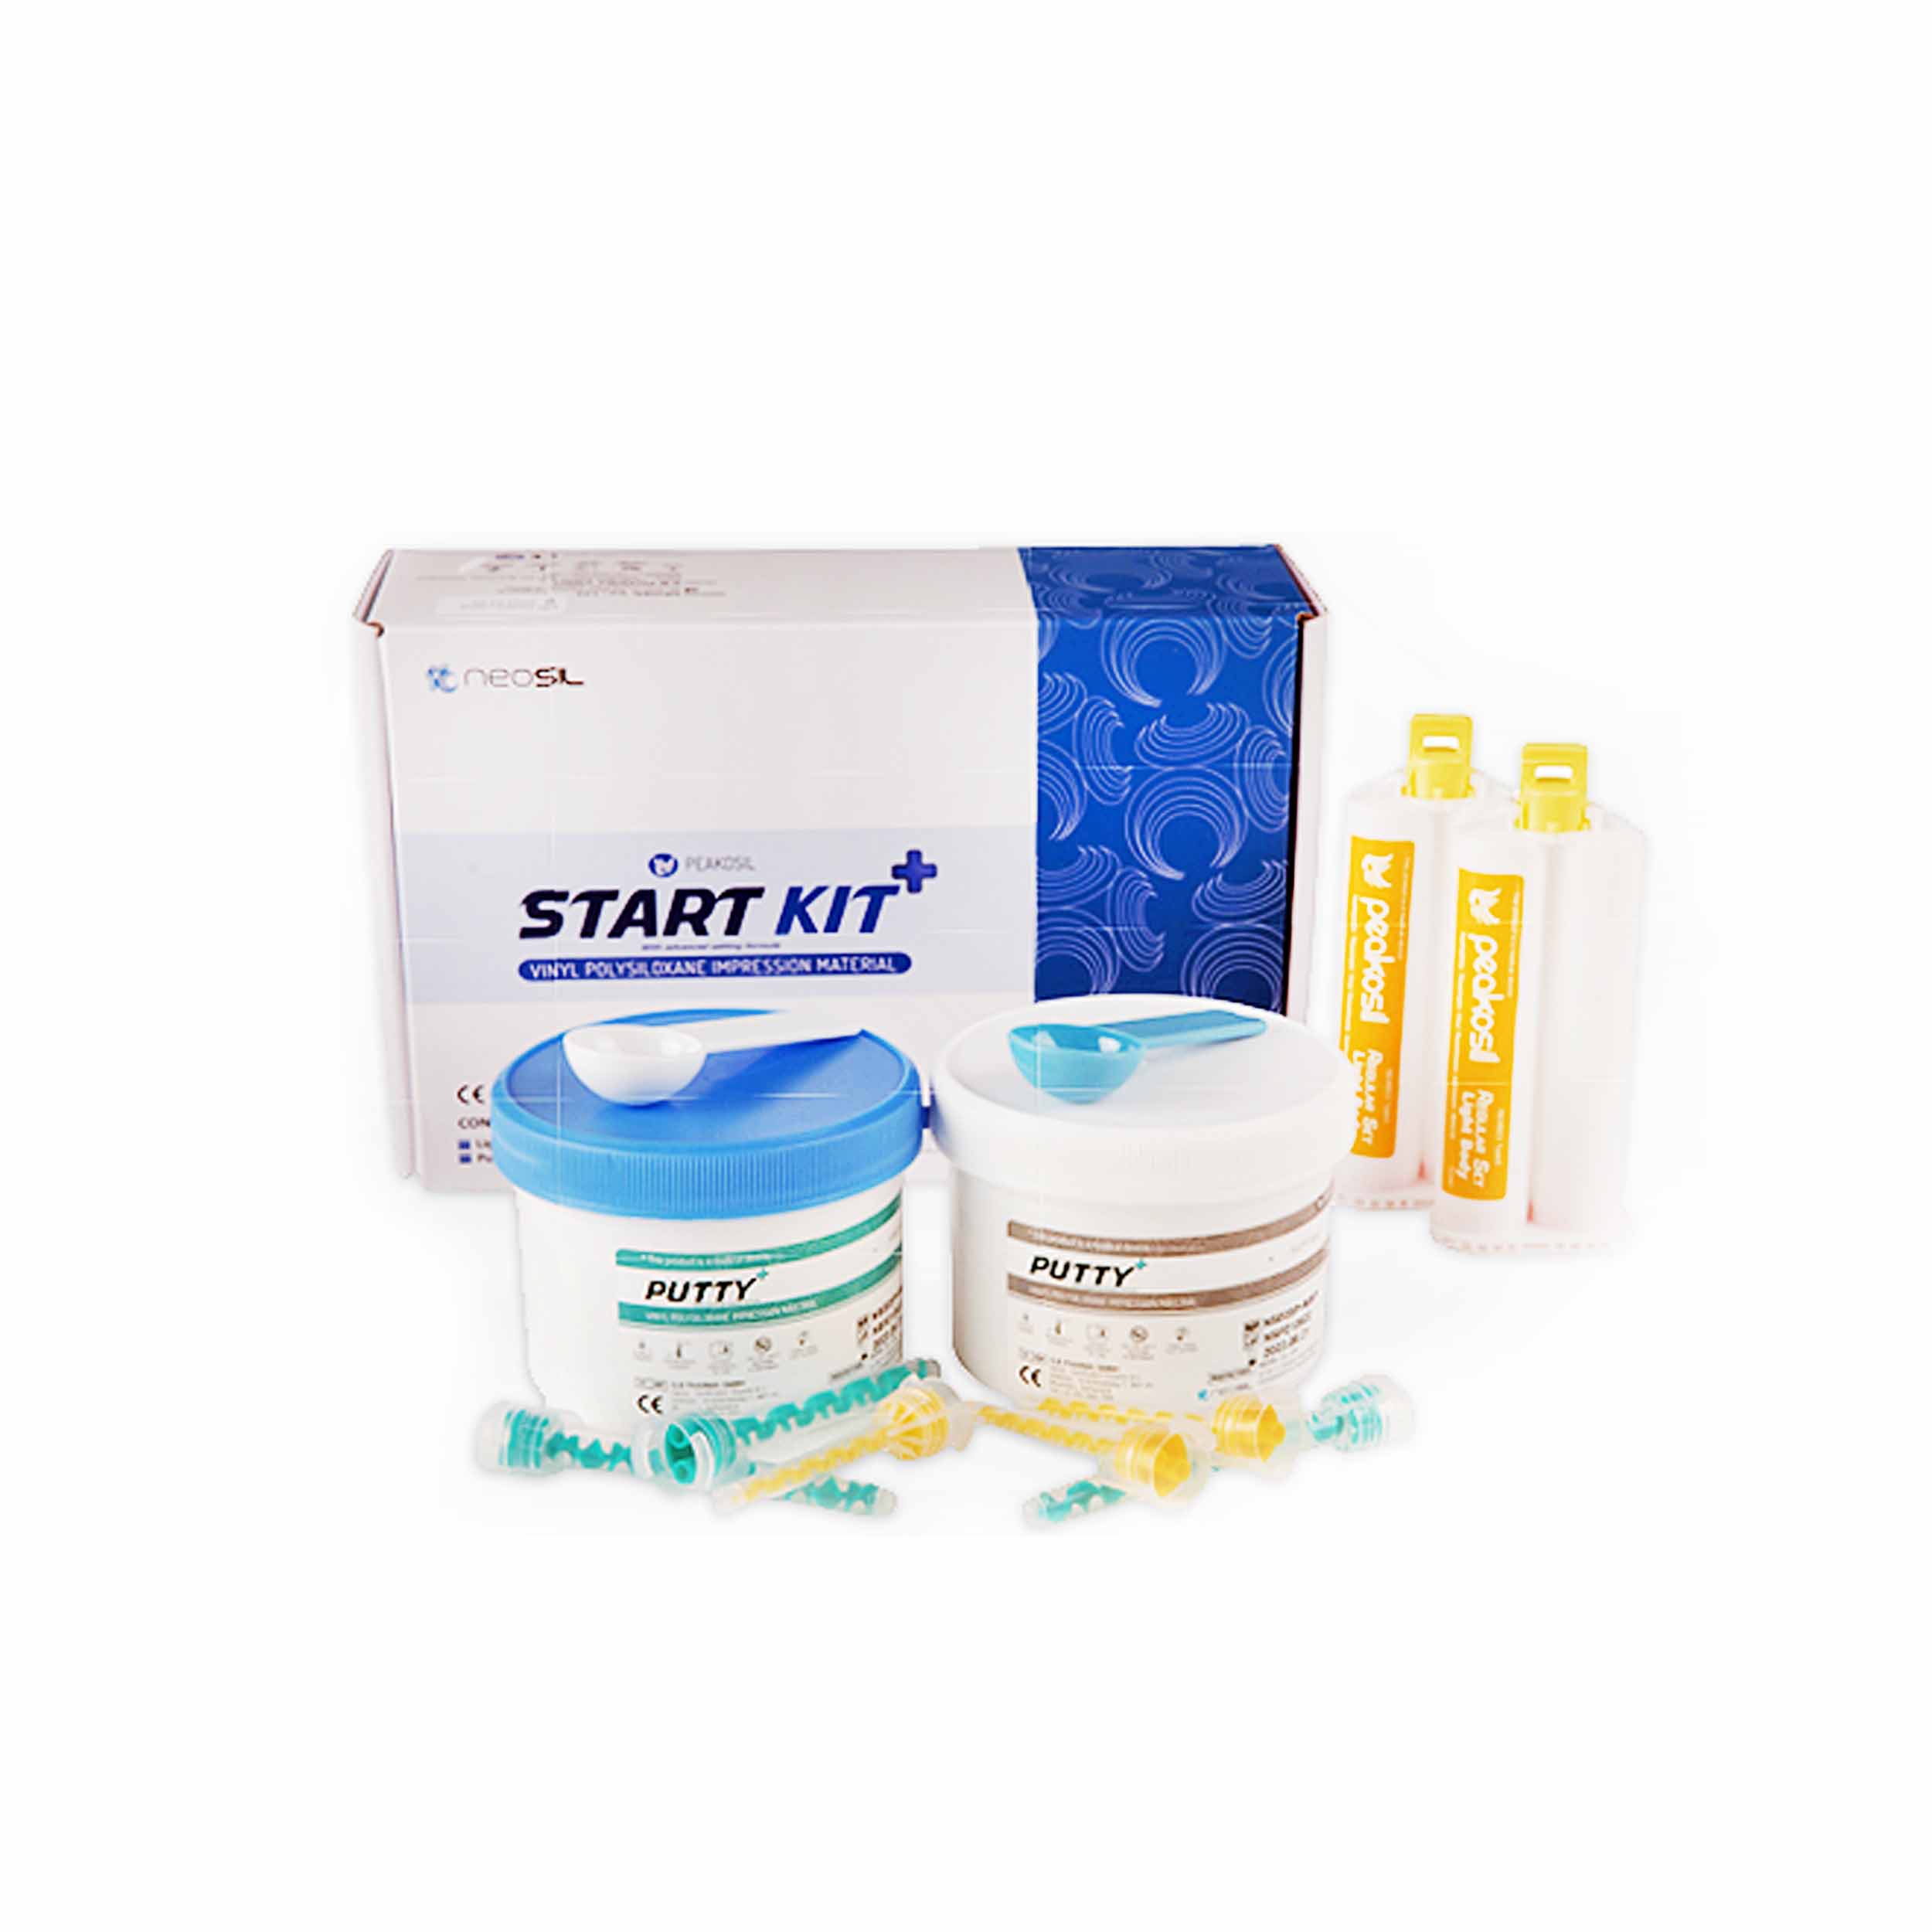 Neosil Peakosil-Start Kit